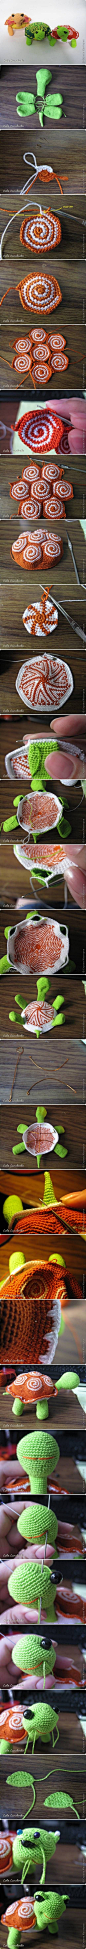 DIY Little Crochet Turtle